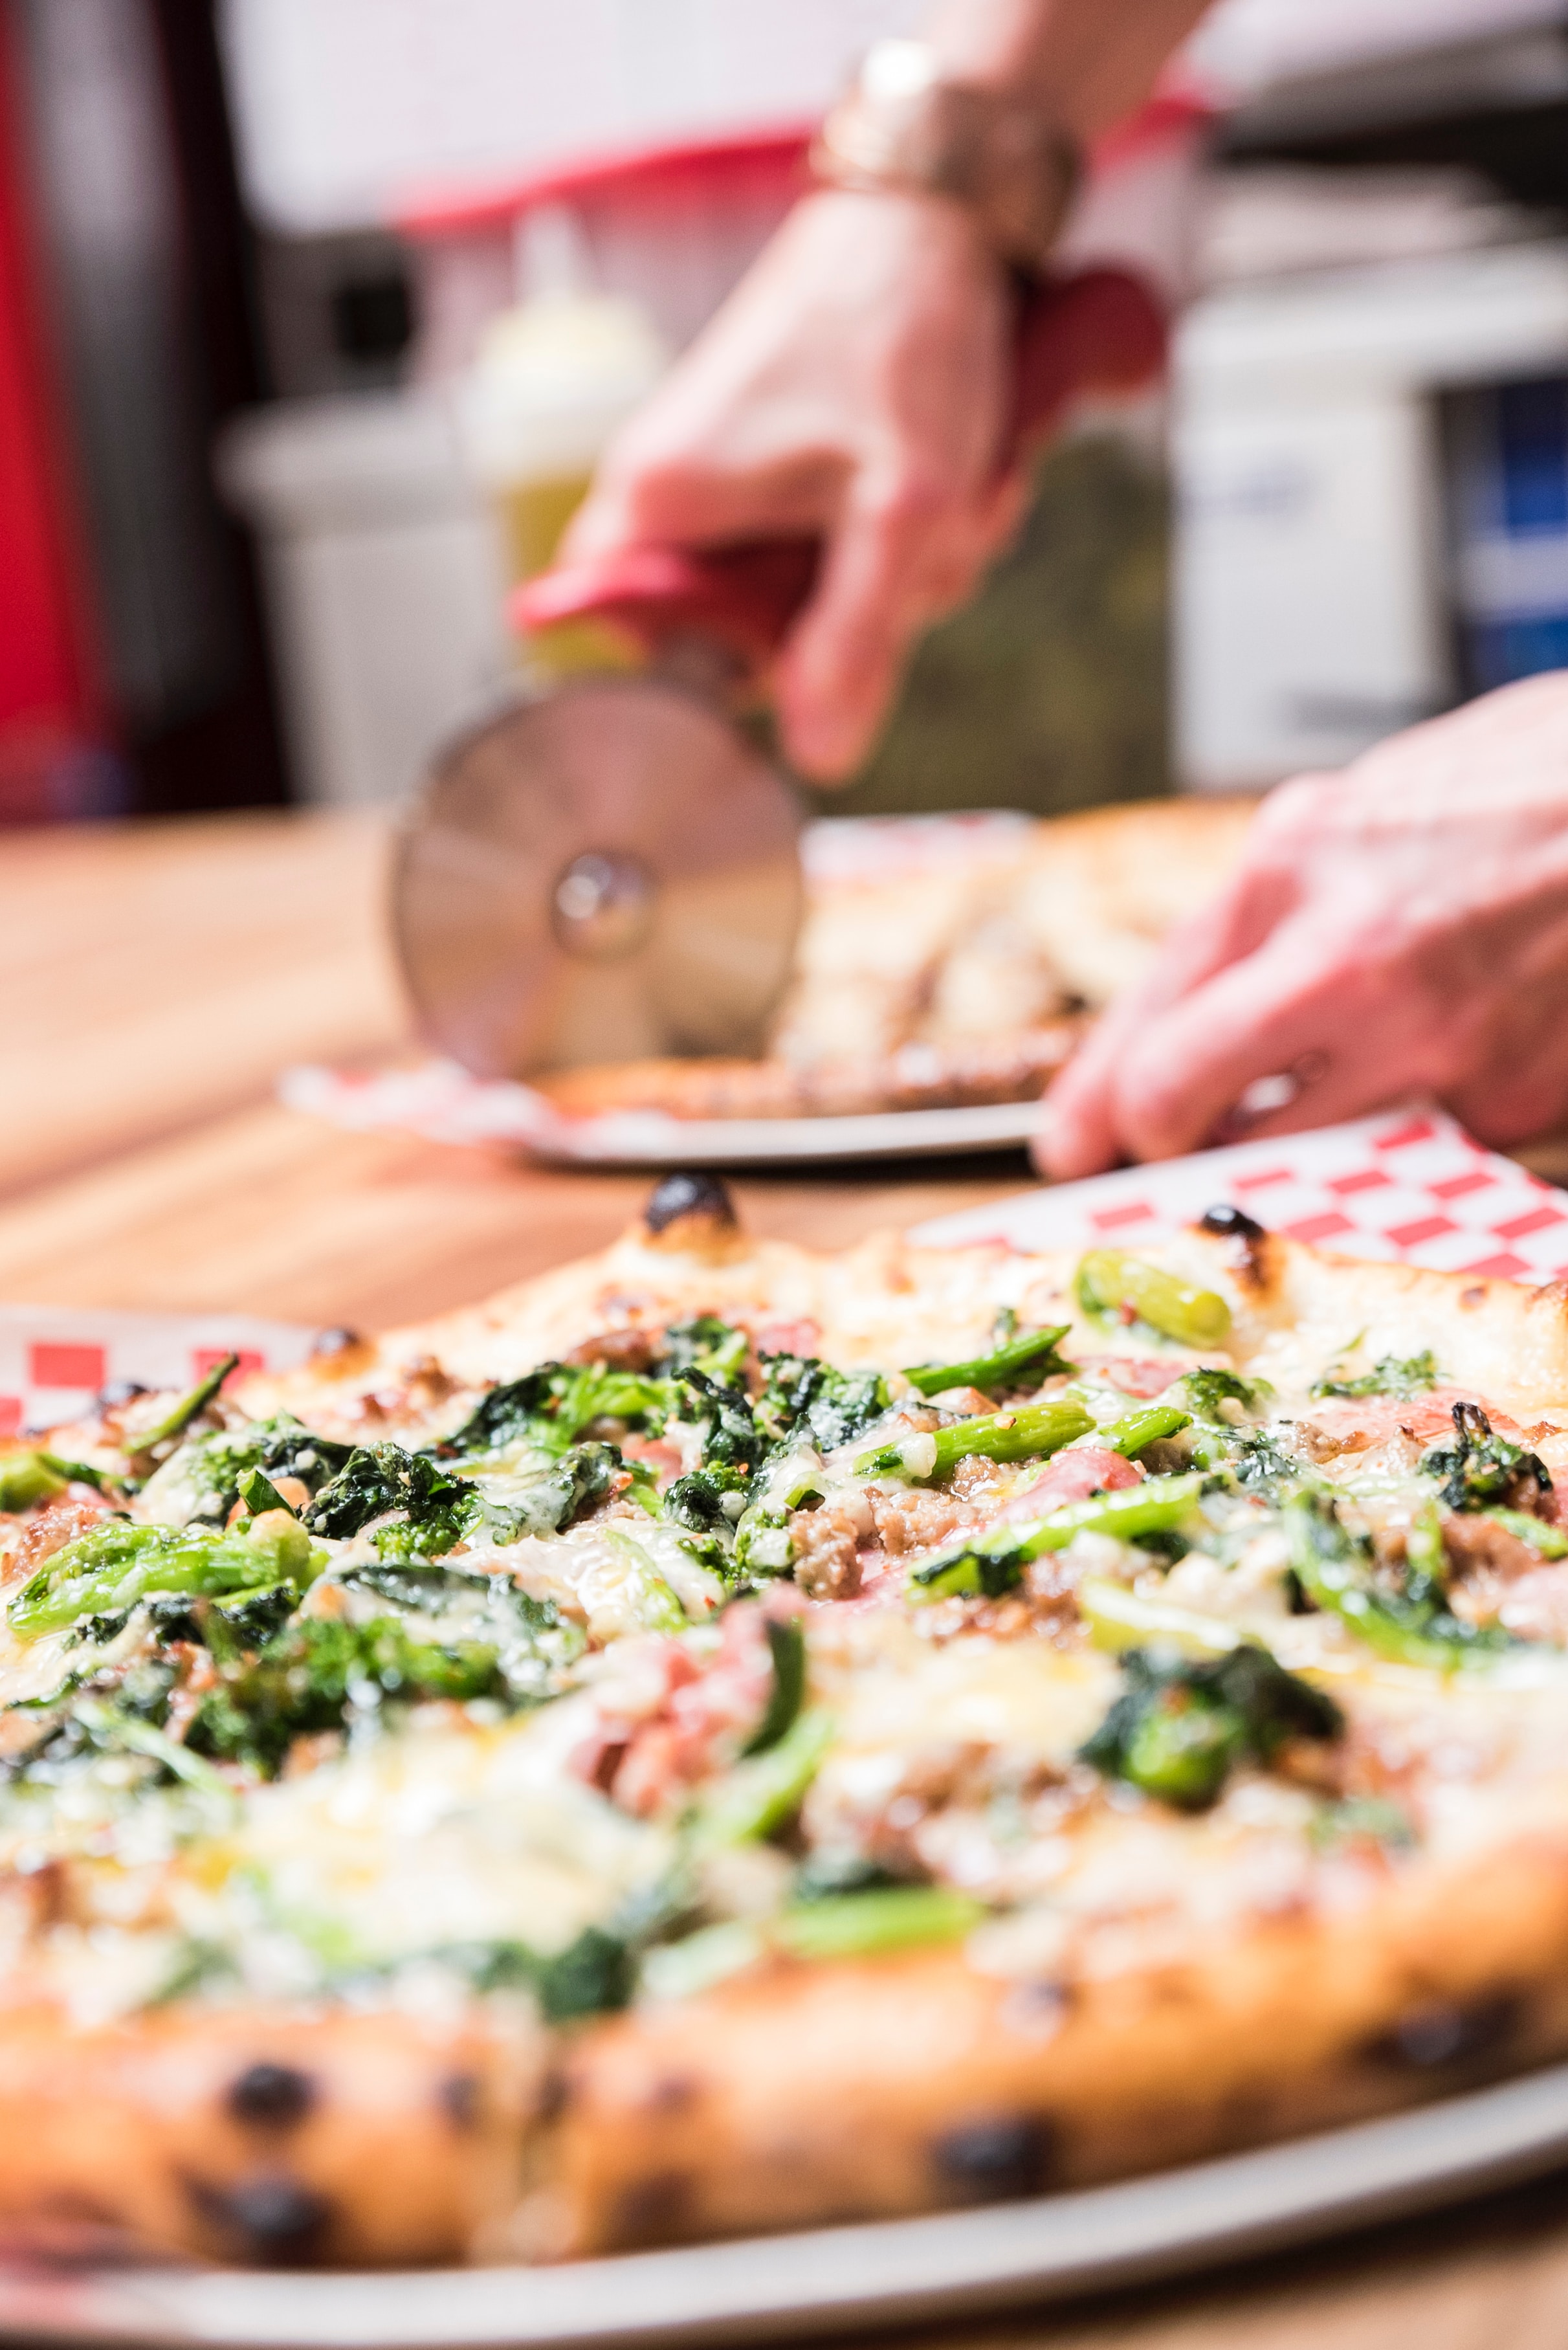 Women slice broccoli pizza